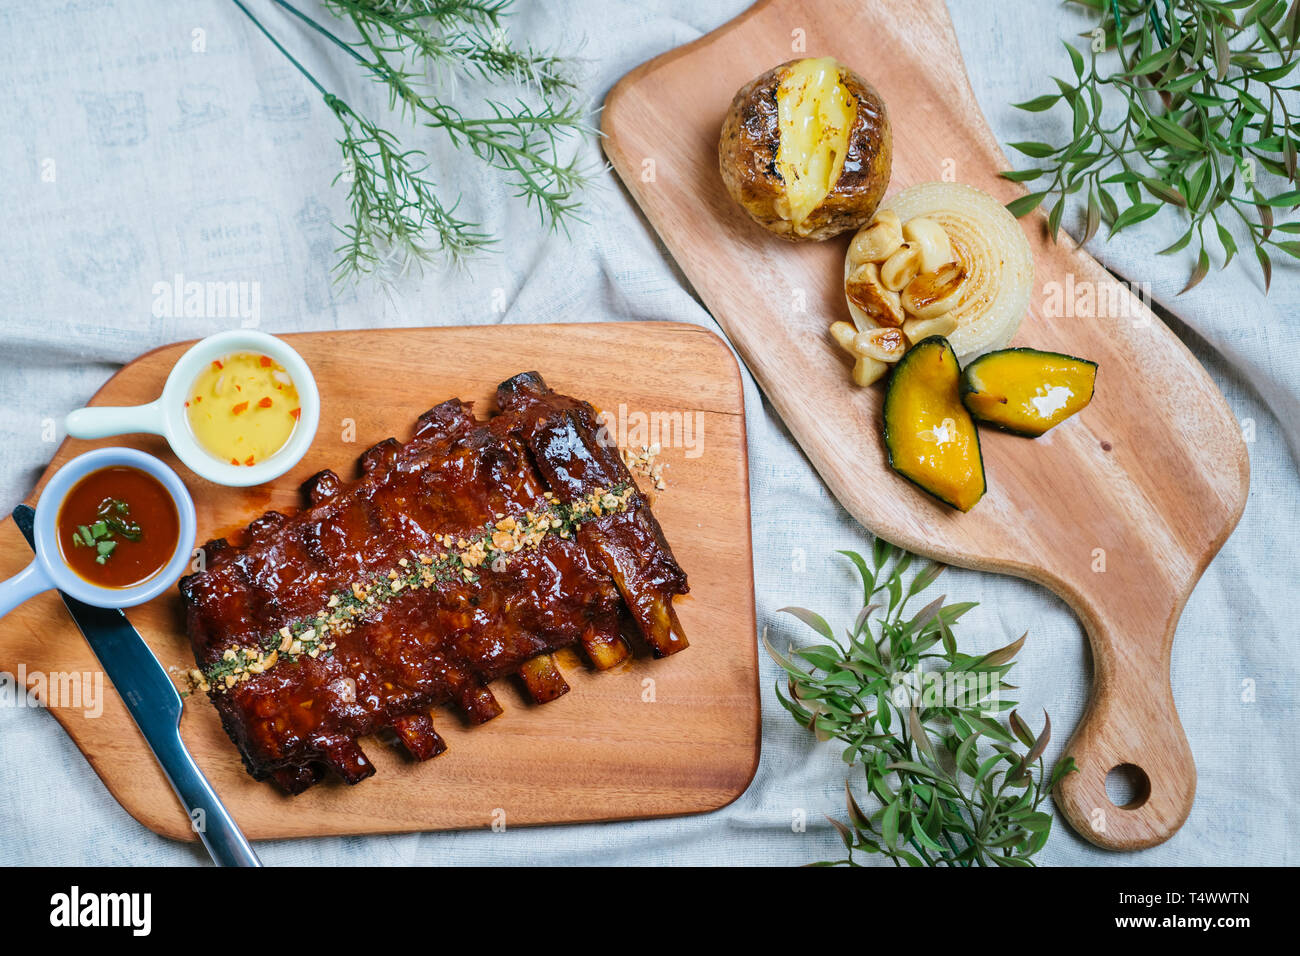 Côtes levées au barbecue avec du miel se trouve sur une vieille planche en bois vintage rustique, sauce, sauce de poisson, l'aneth, les oignons sur la table en haut, bas, angle shot Banque D'Images